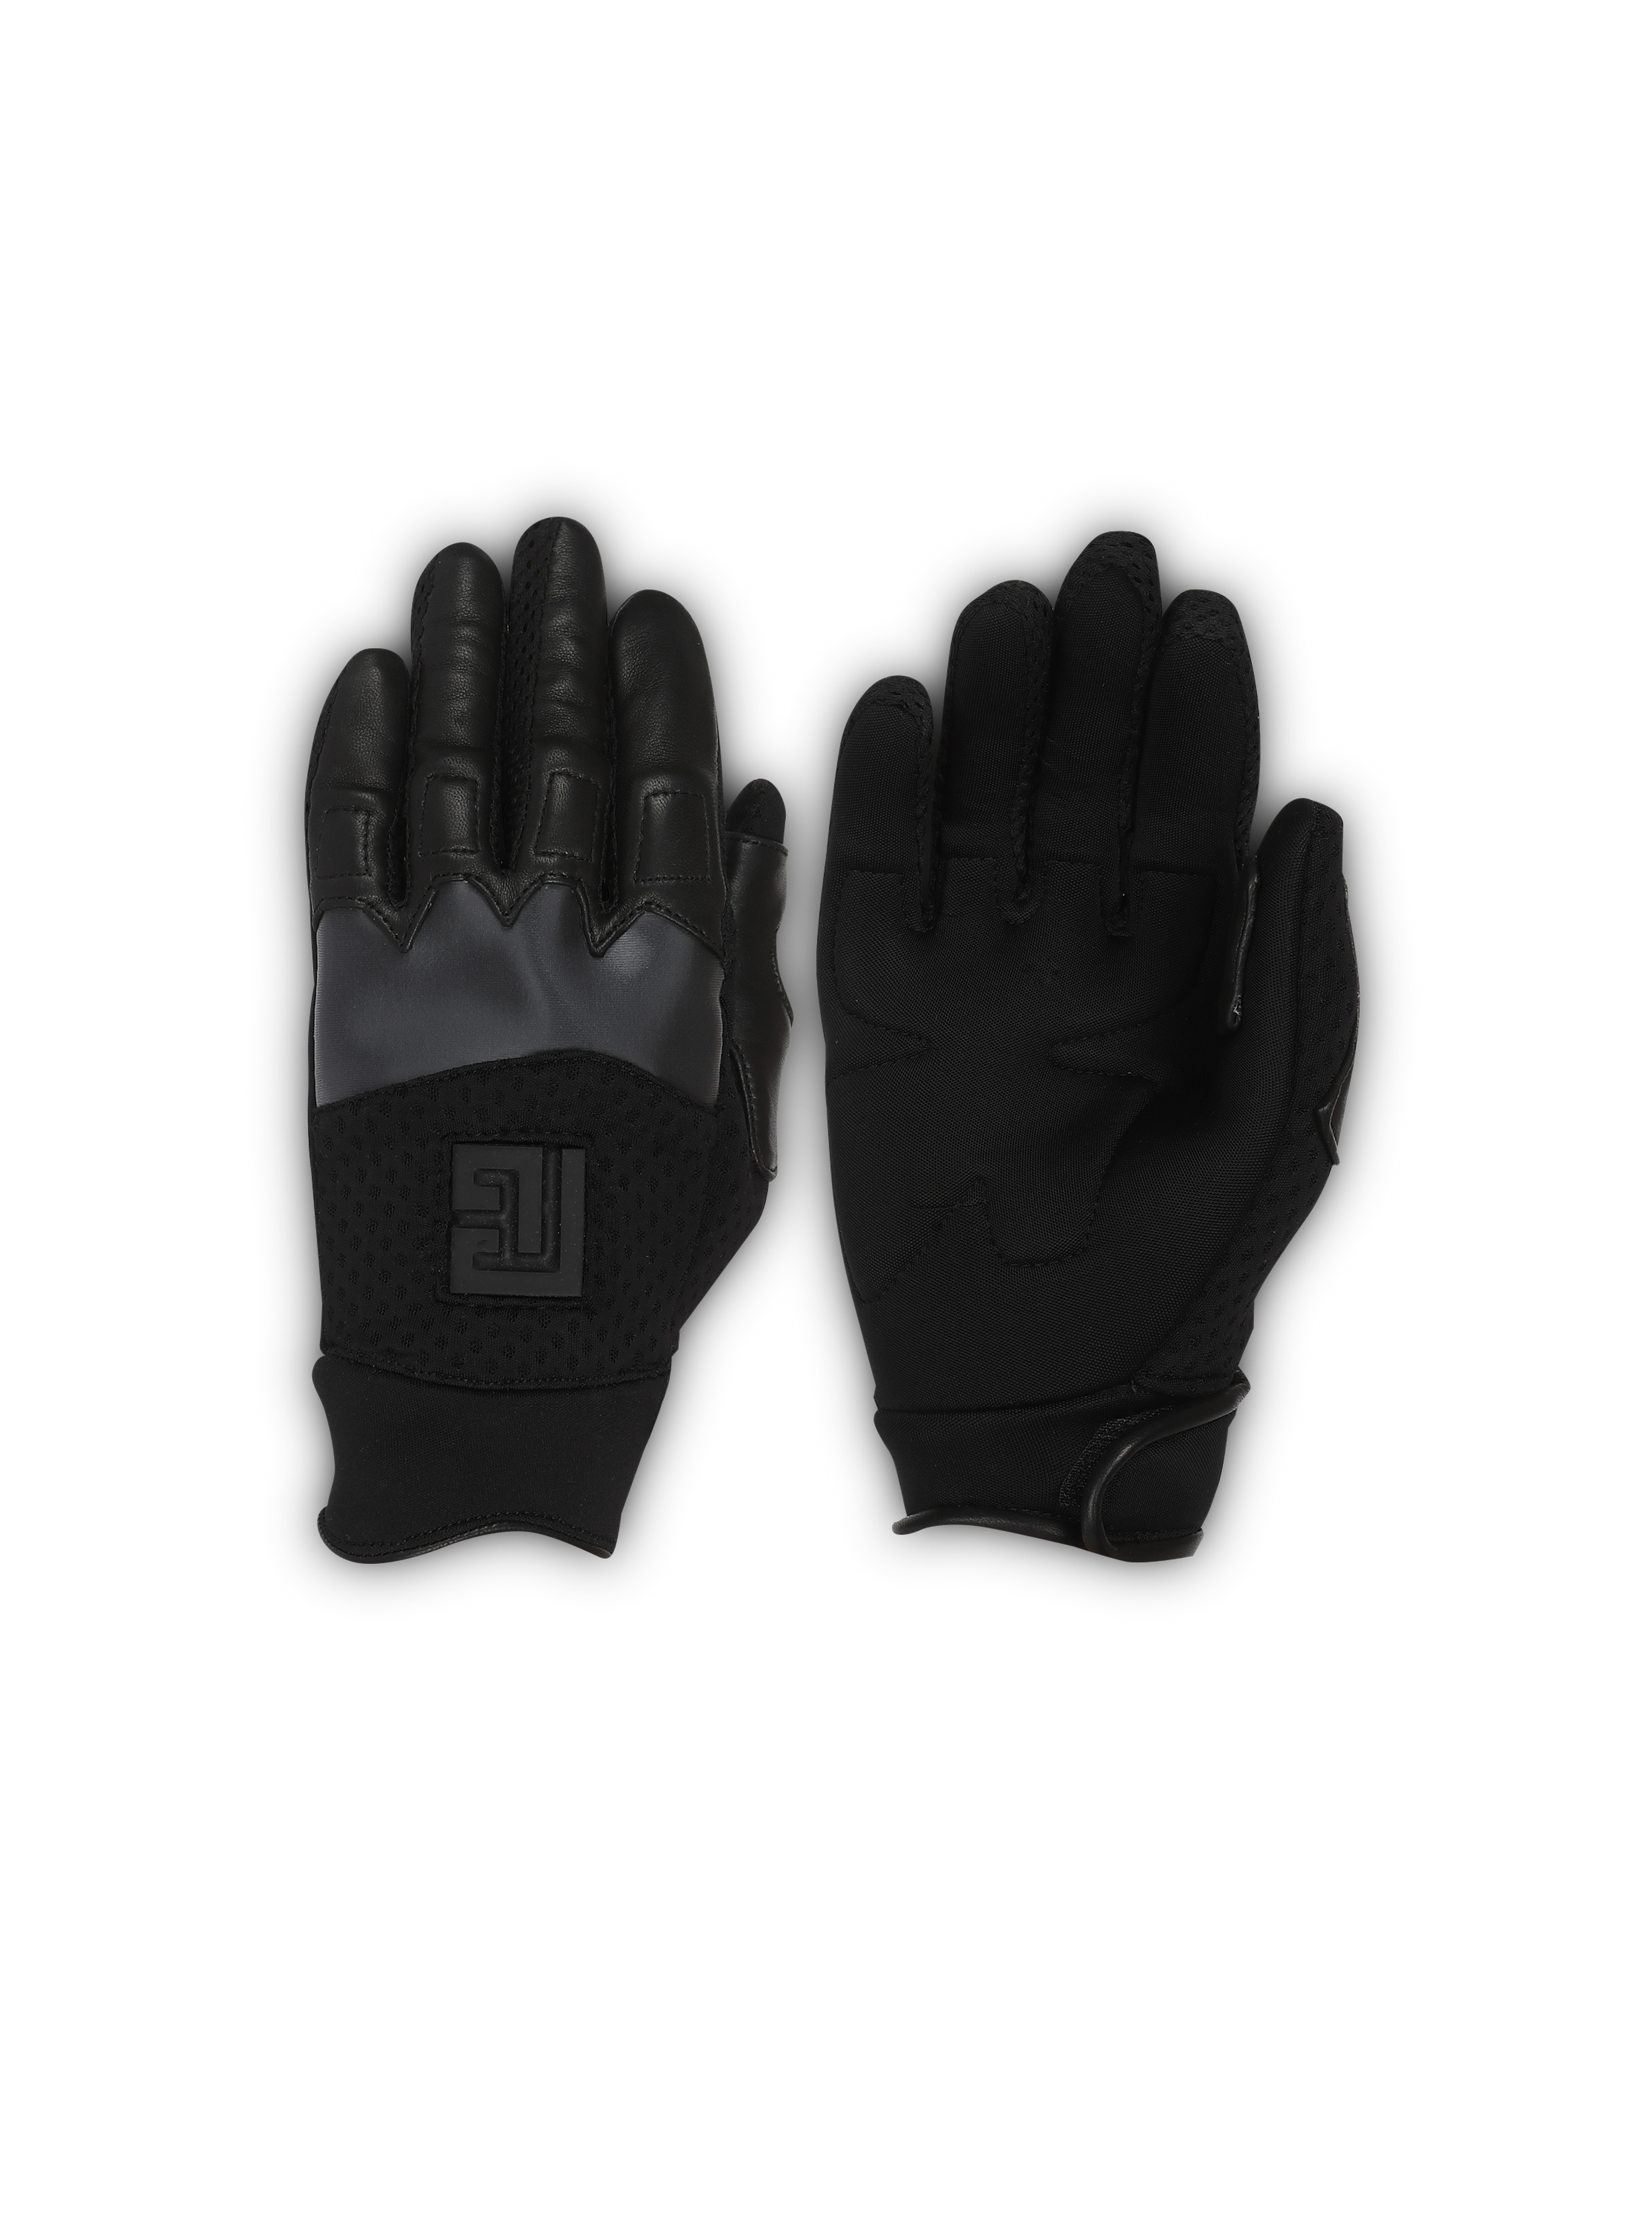 Pair of neoprene gloves, black